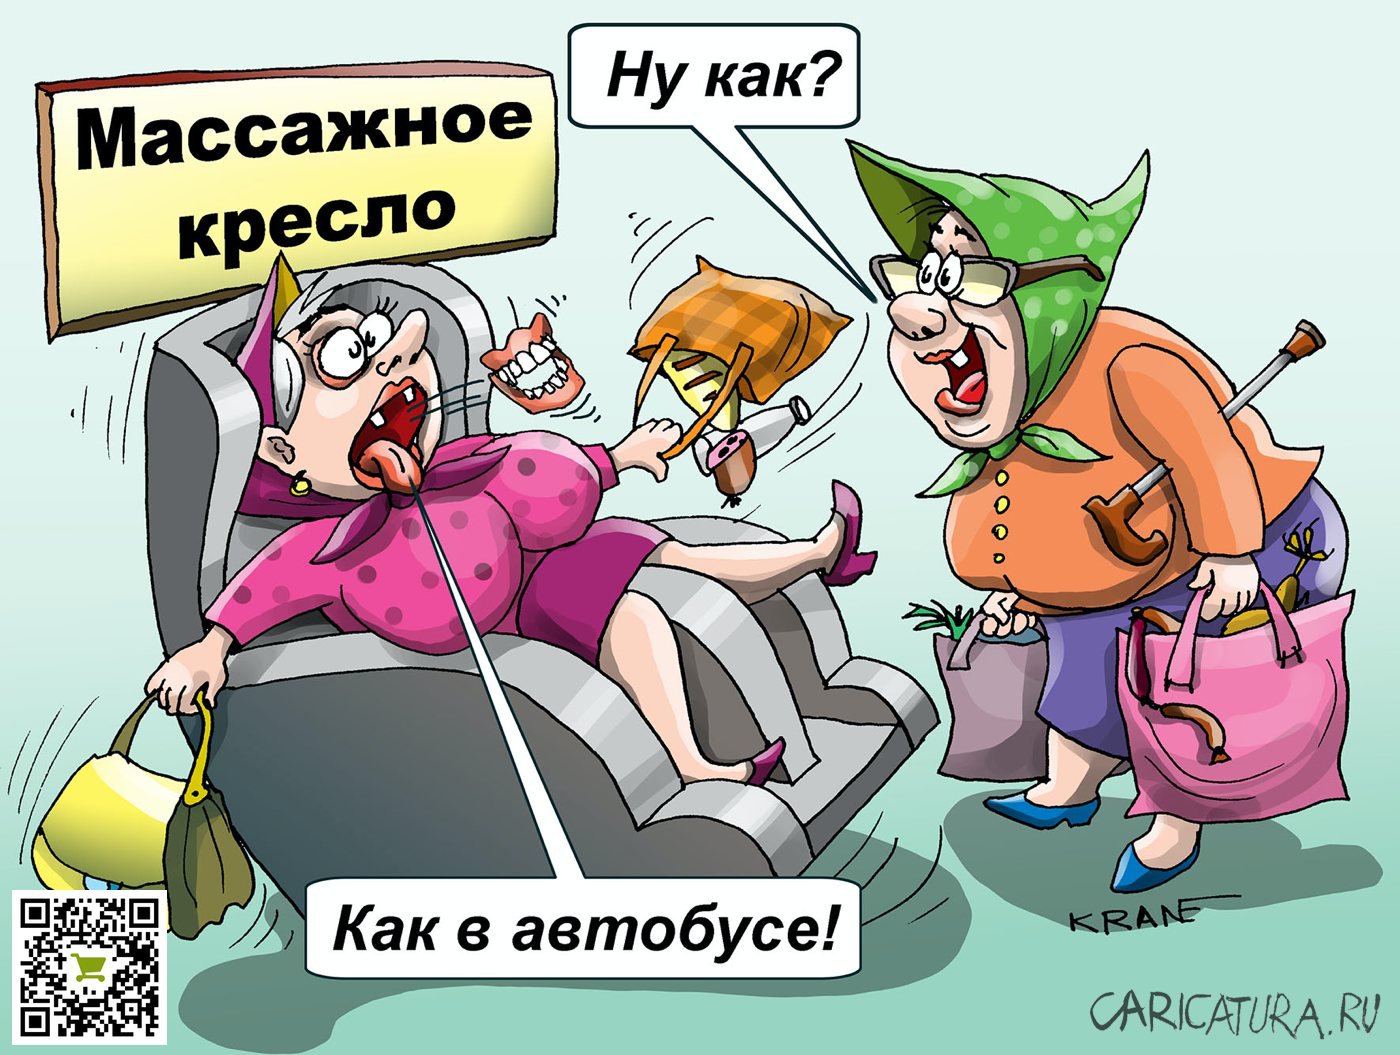 Карикатура "Массажное кресло без остановки", Евгений Кран